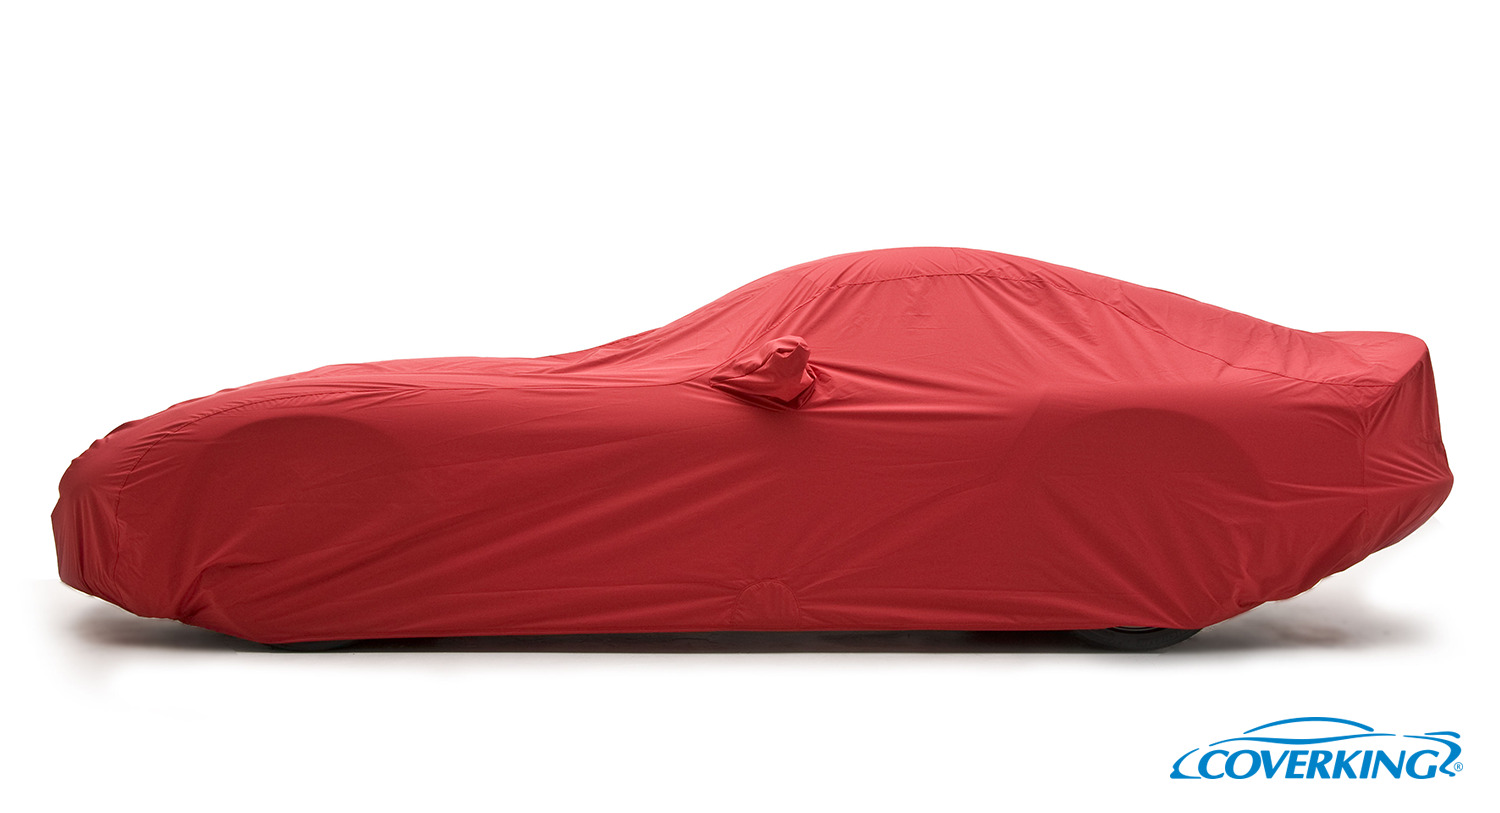 Coverking Stormproof Premium Custom Tailored Car Cover for Ferrari Testarossa